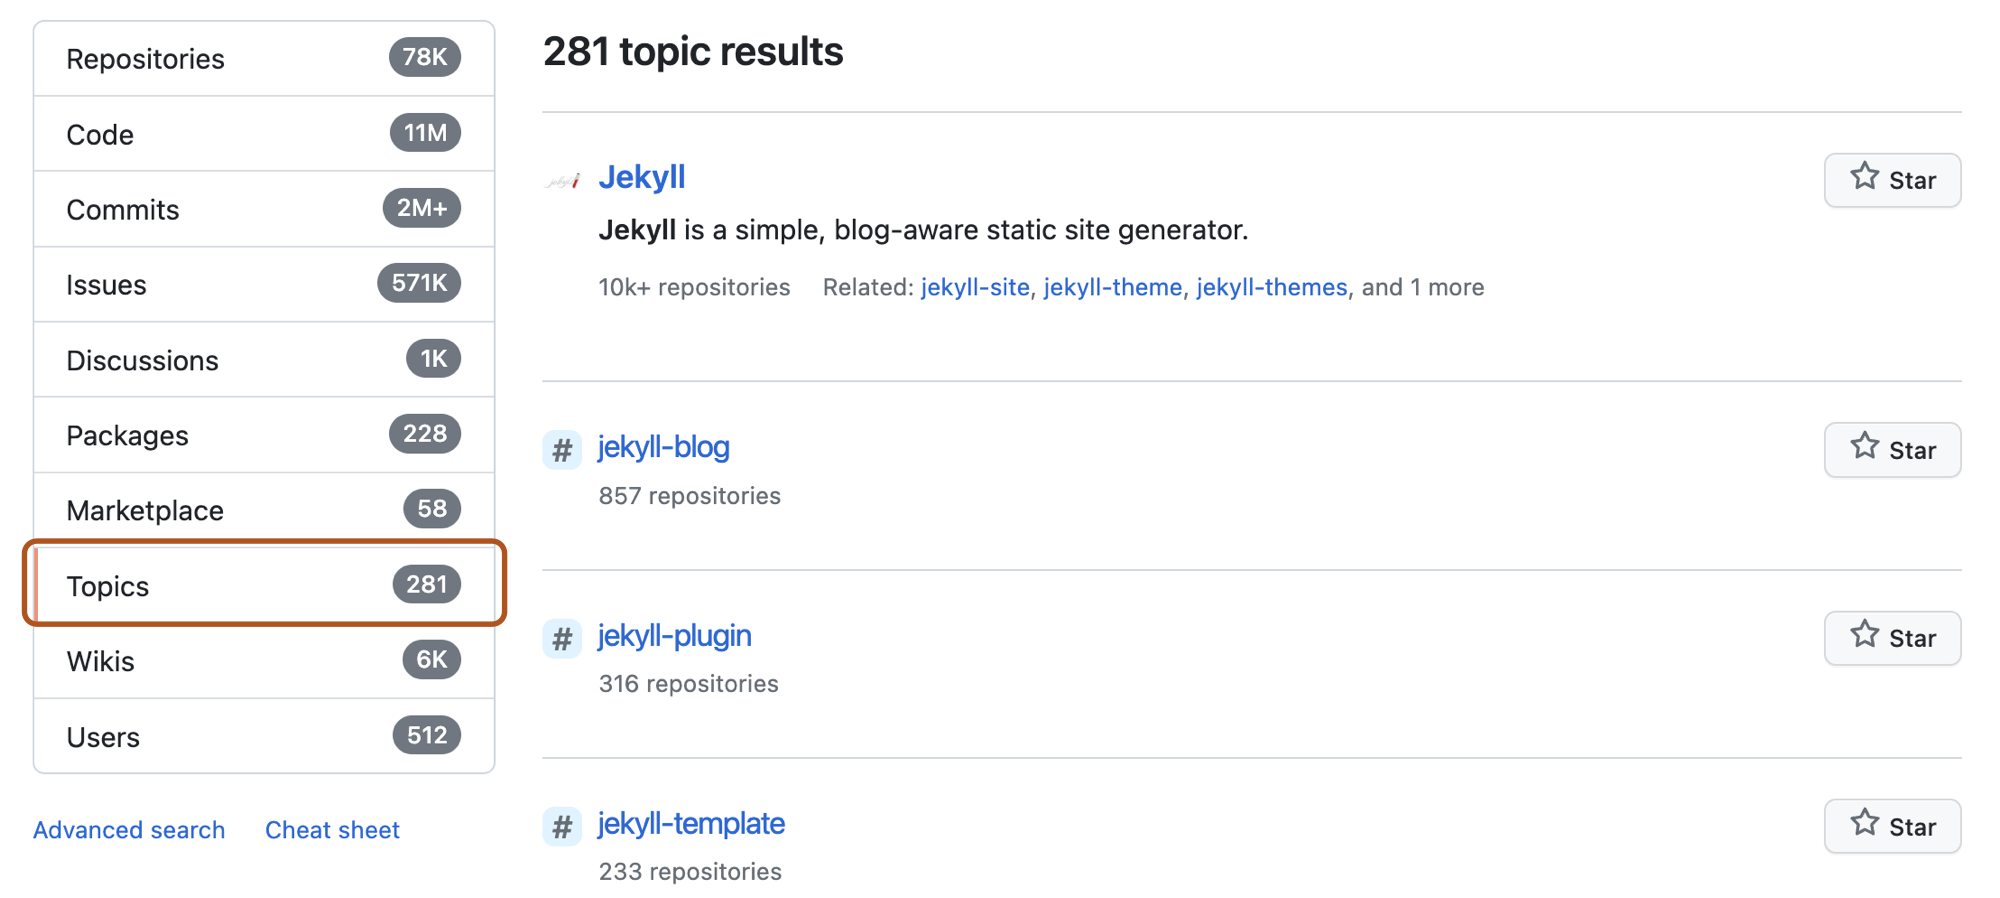 Captura de tela da página de resultados da pesquisa do repositório para o termo de pesquisa 'jekyll' com a opção "Tópicos" no menu à esquerda realçado em laranja escuro.